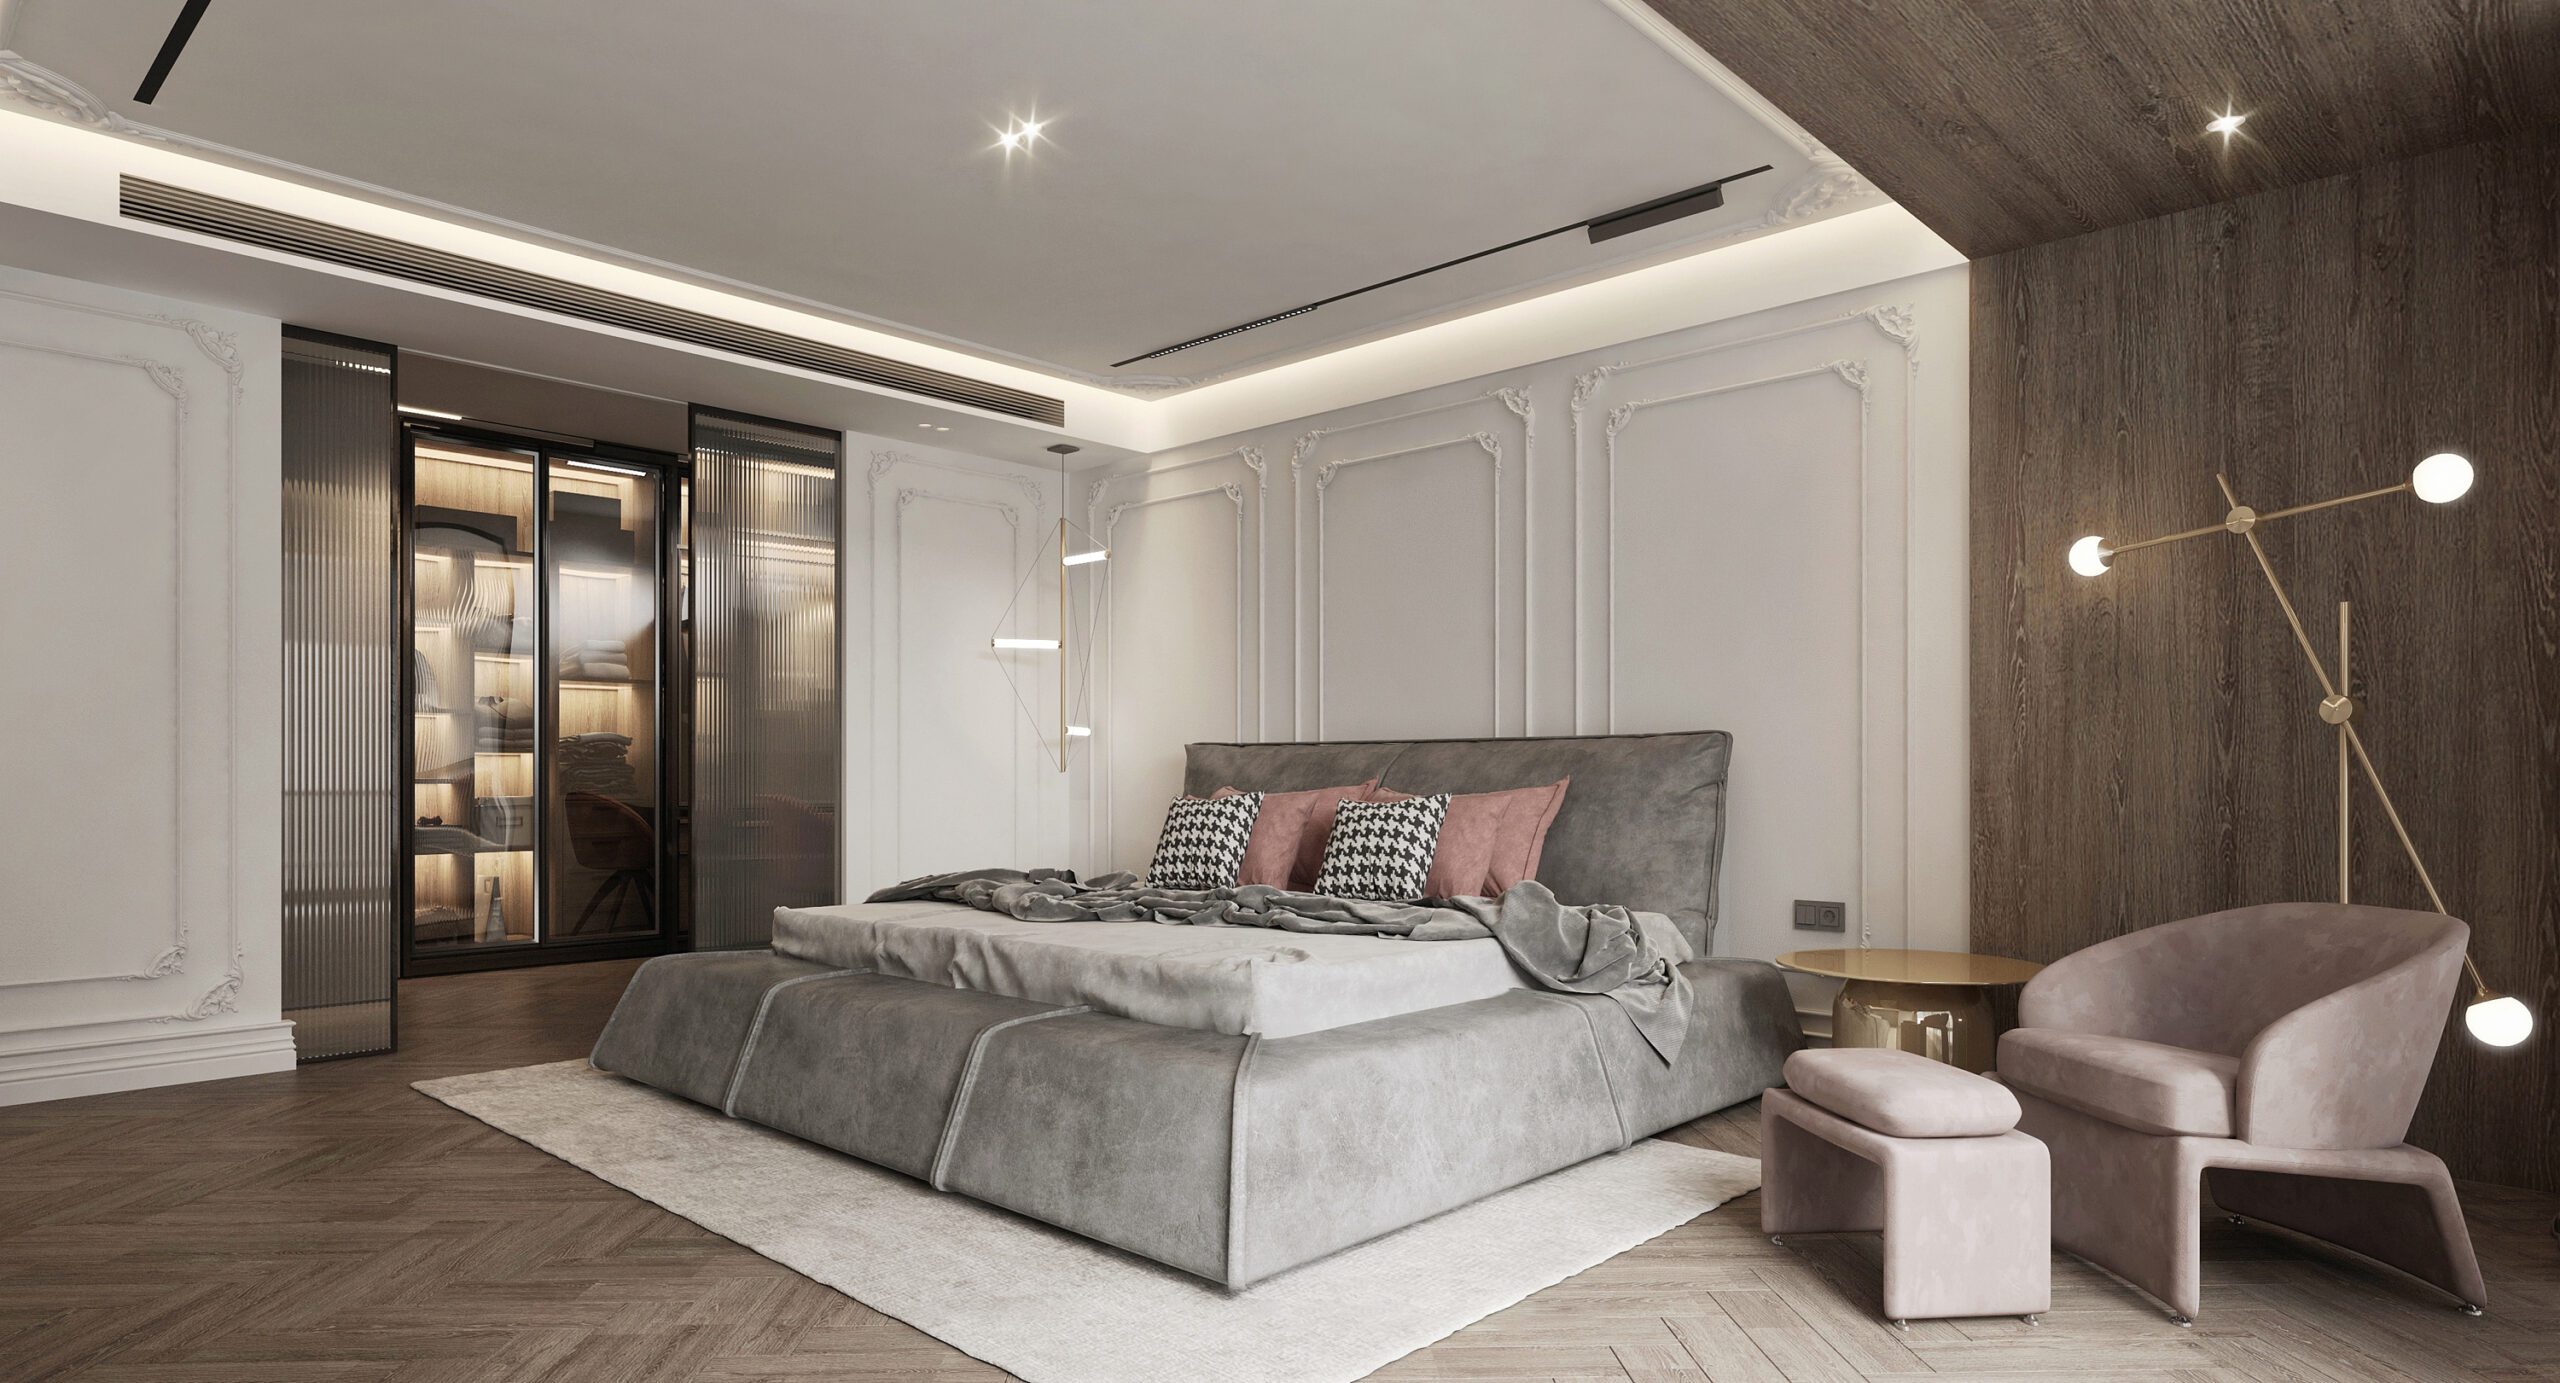 中性的輕法式設計讓臥室減少過多的裝飾，咖啡色與奶油色的碰撞讓臥室充滿浪漫的感覺